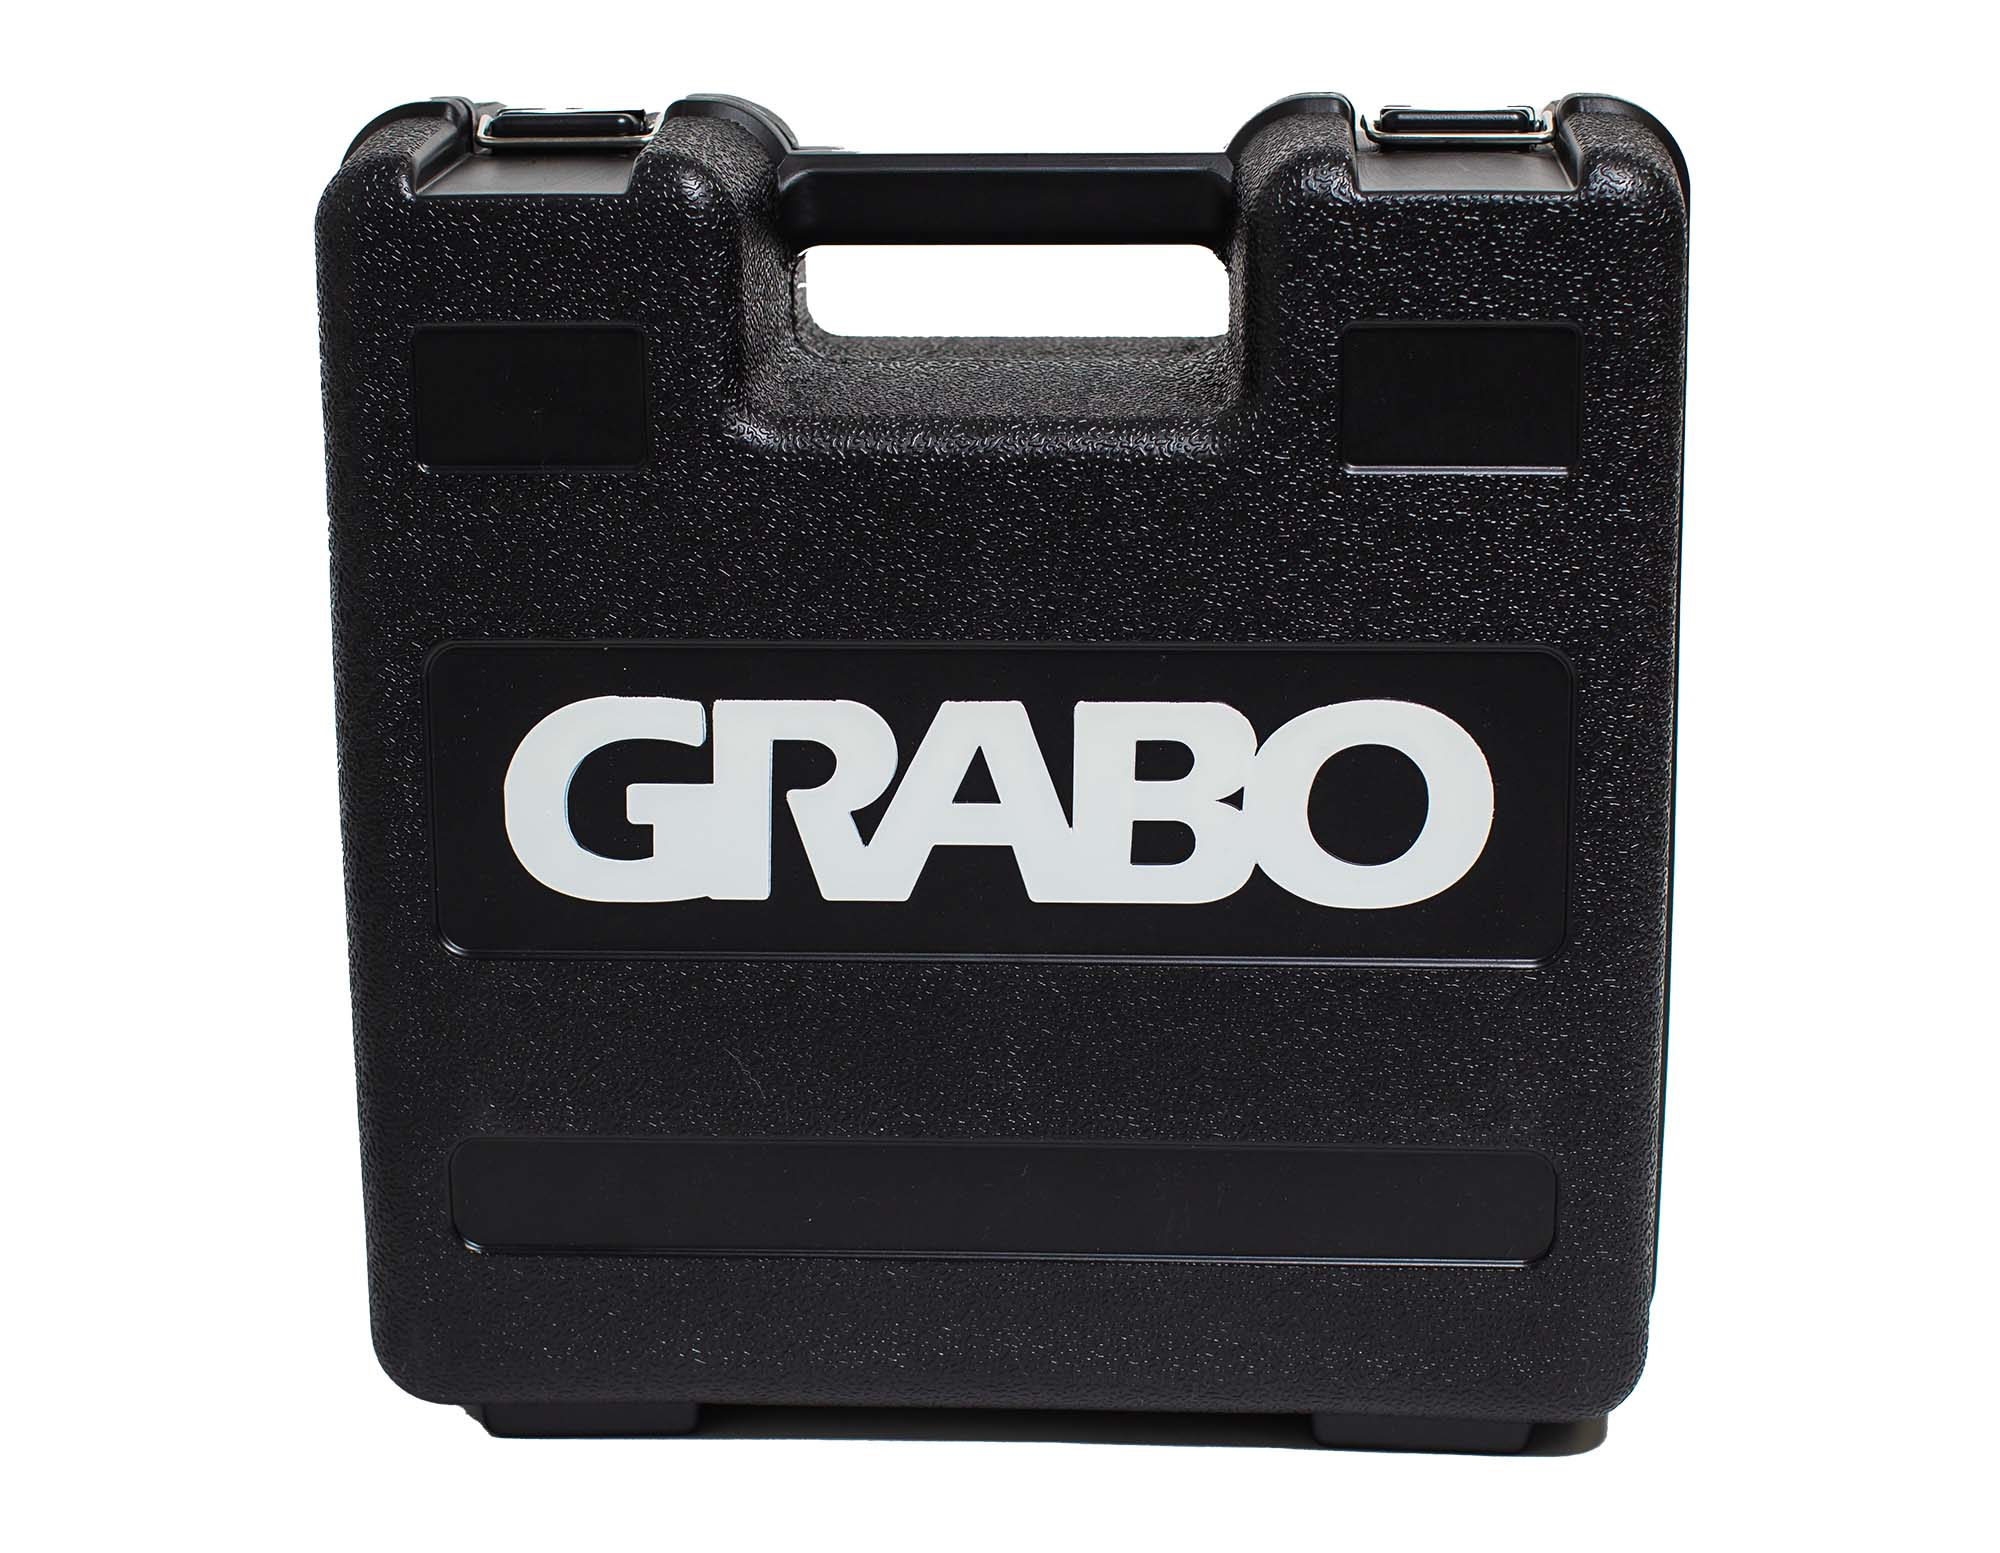 GRABO PRO, Ventouse électrique portative en systainer